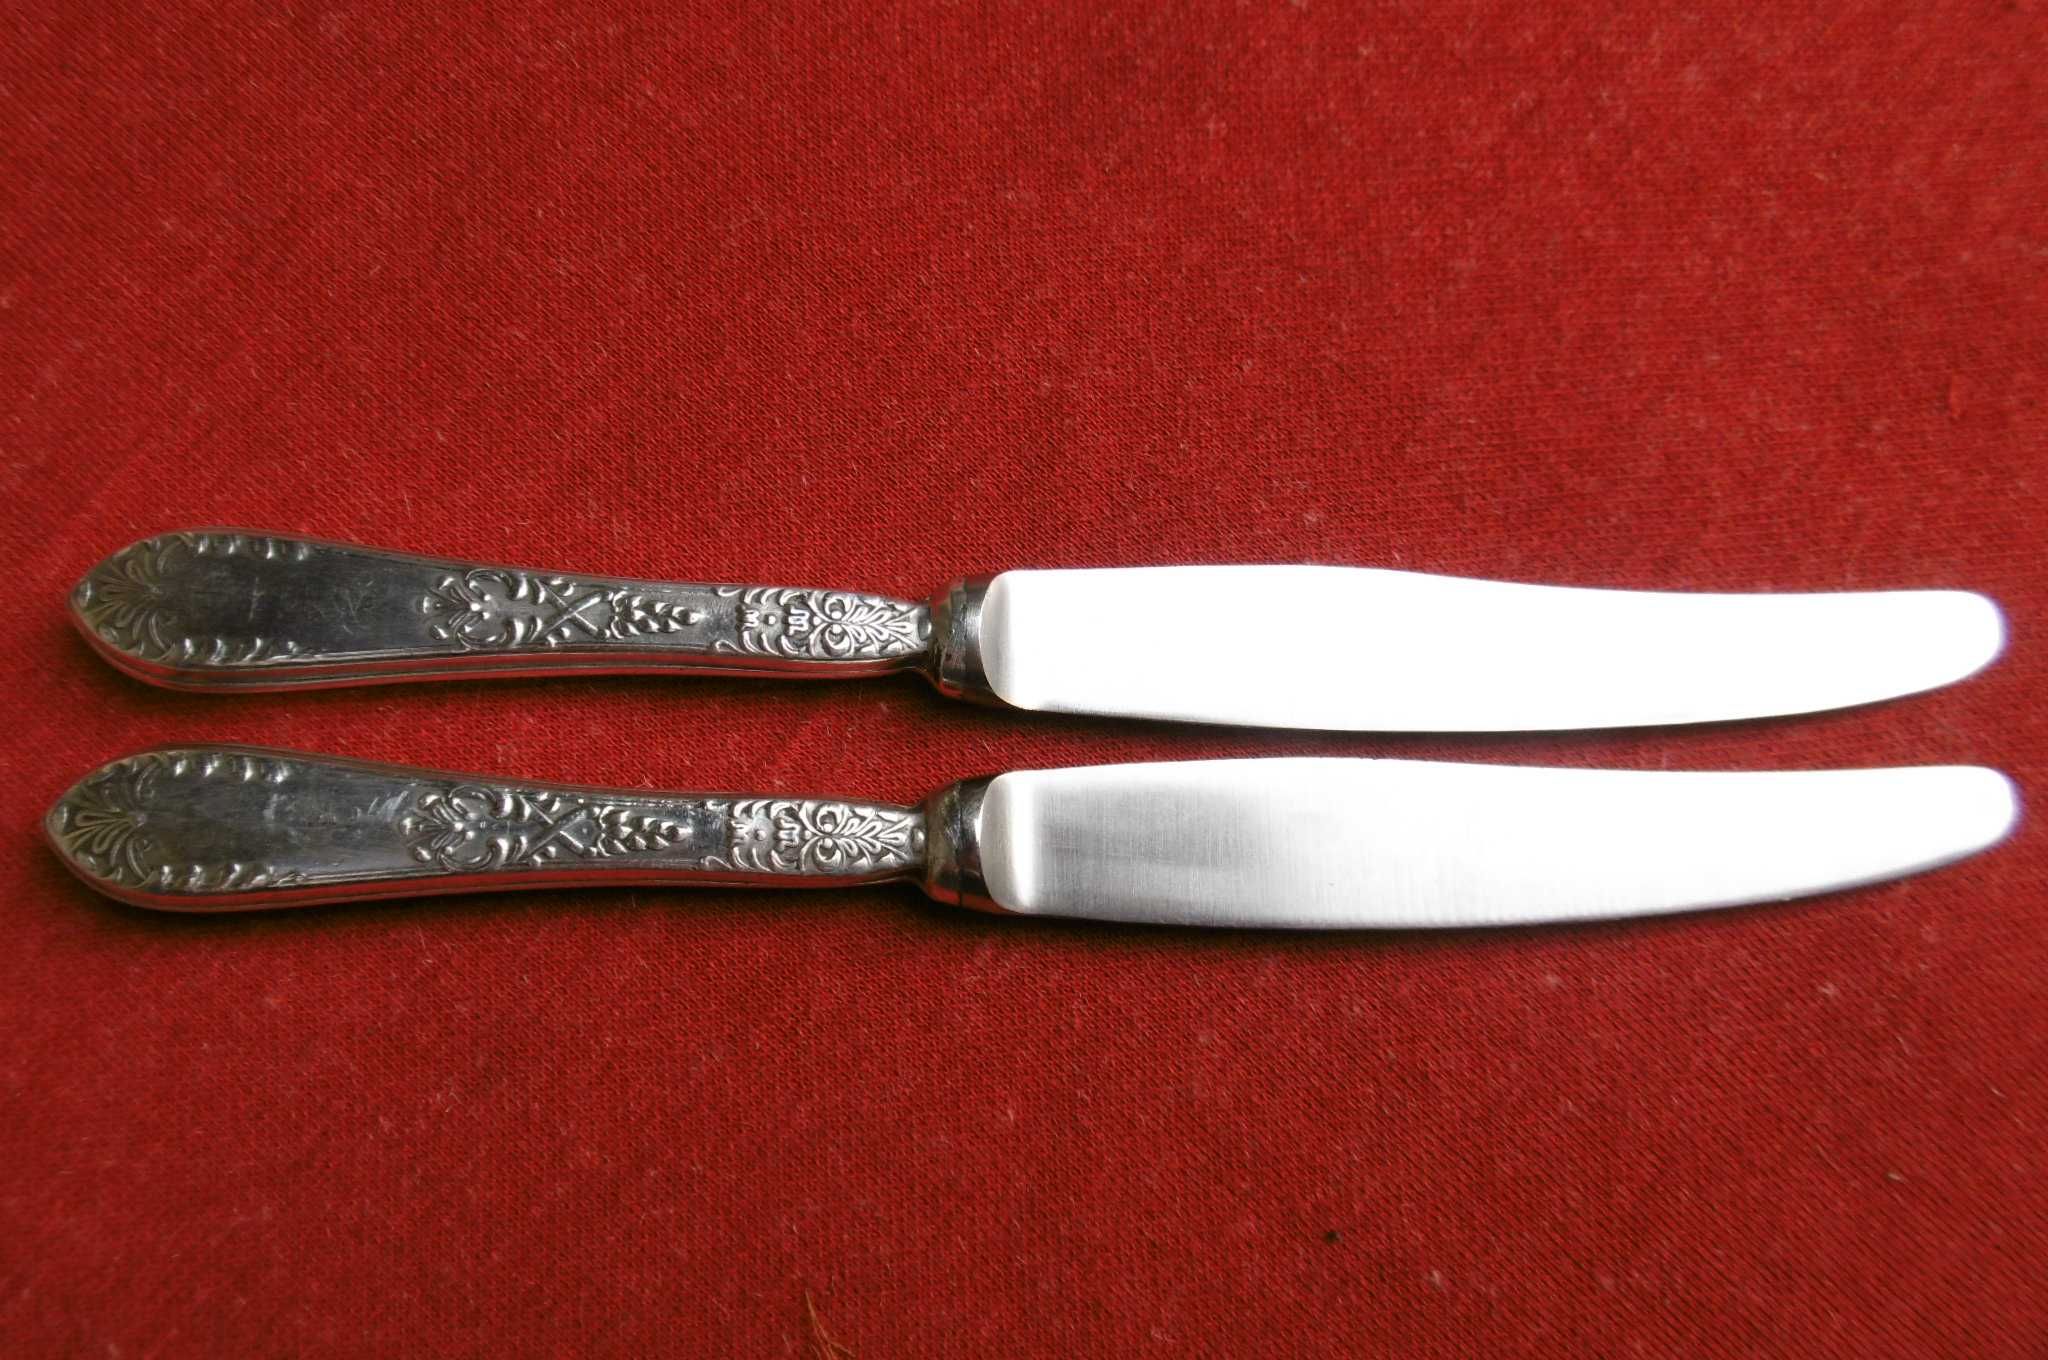 Hefra wzór romański  - noże obiadowe 2 szt.